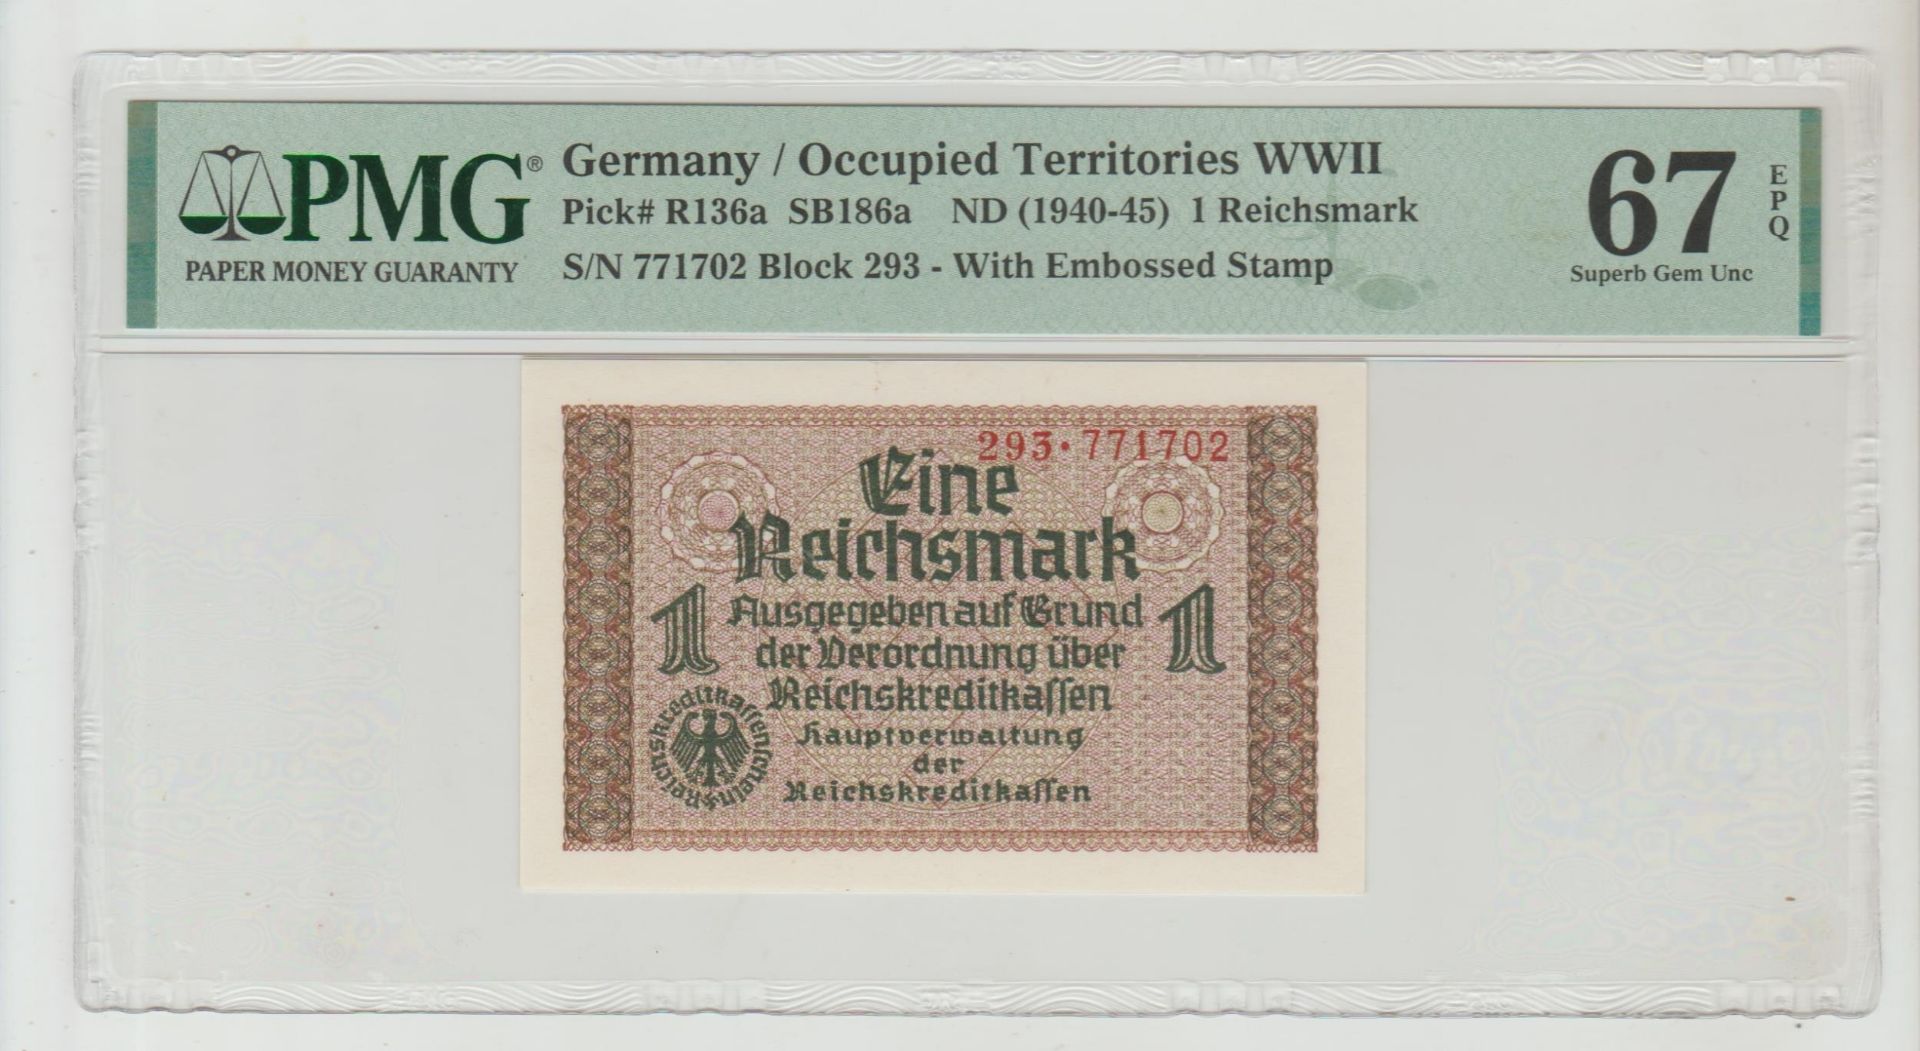 Germany, 1 Reichsmark, 1945 year